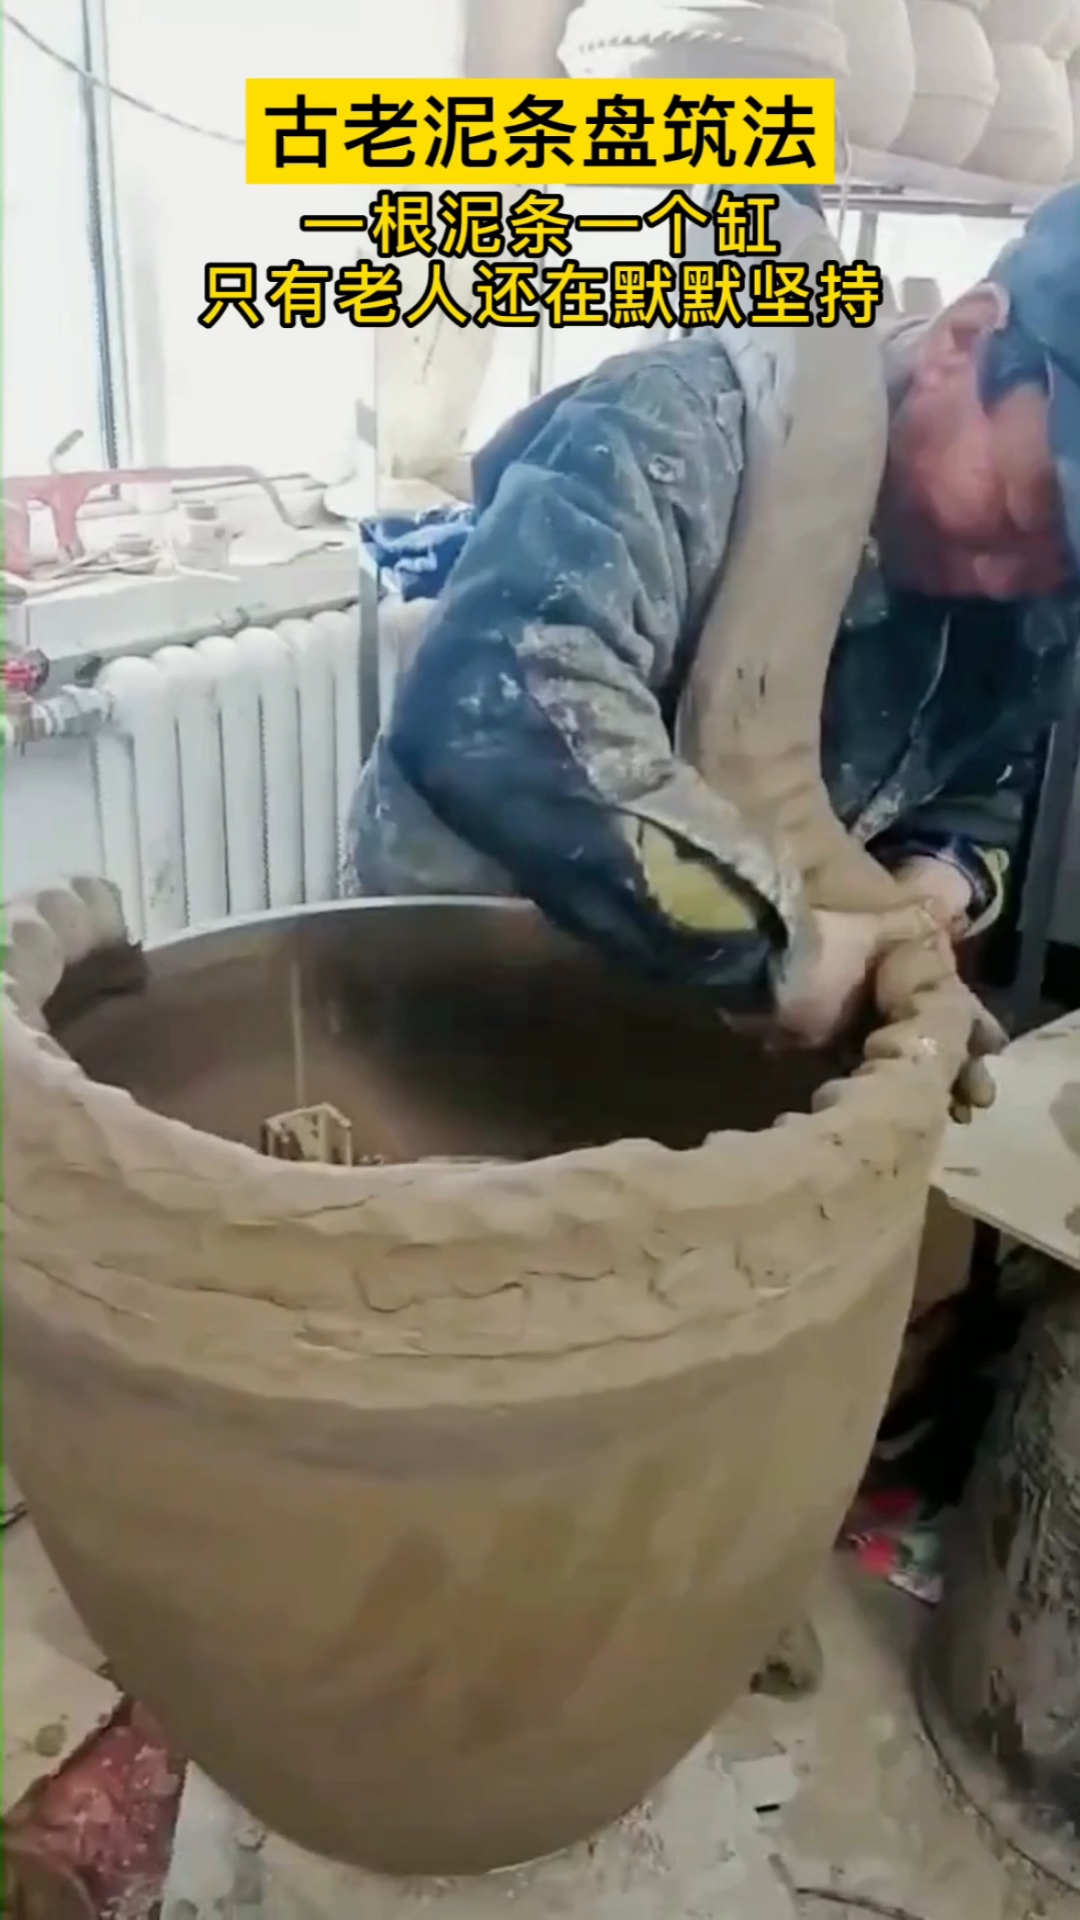 寻找最牛手艺人一根泥条盘一个缸古老泥条盘筑法这种陶瓷制作工艺只有